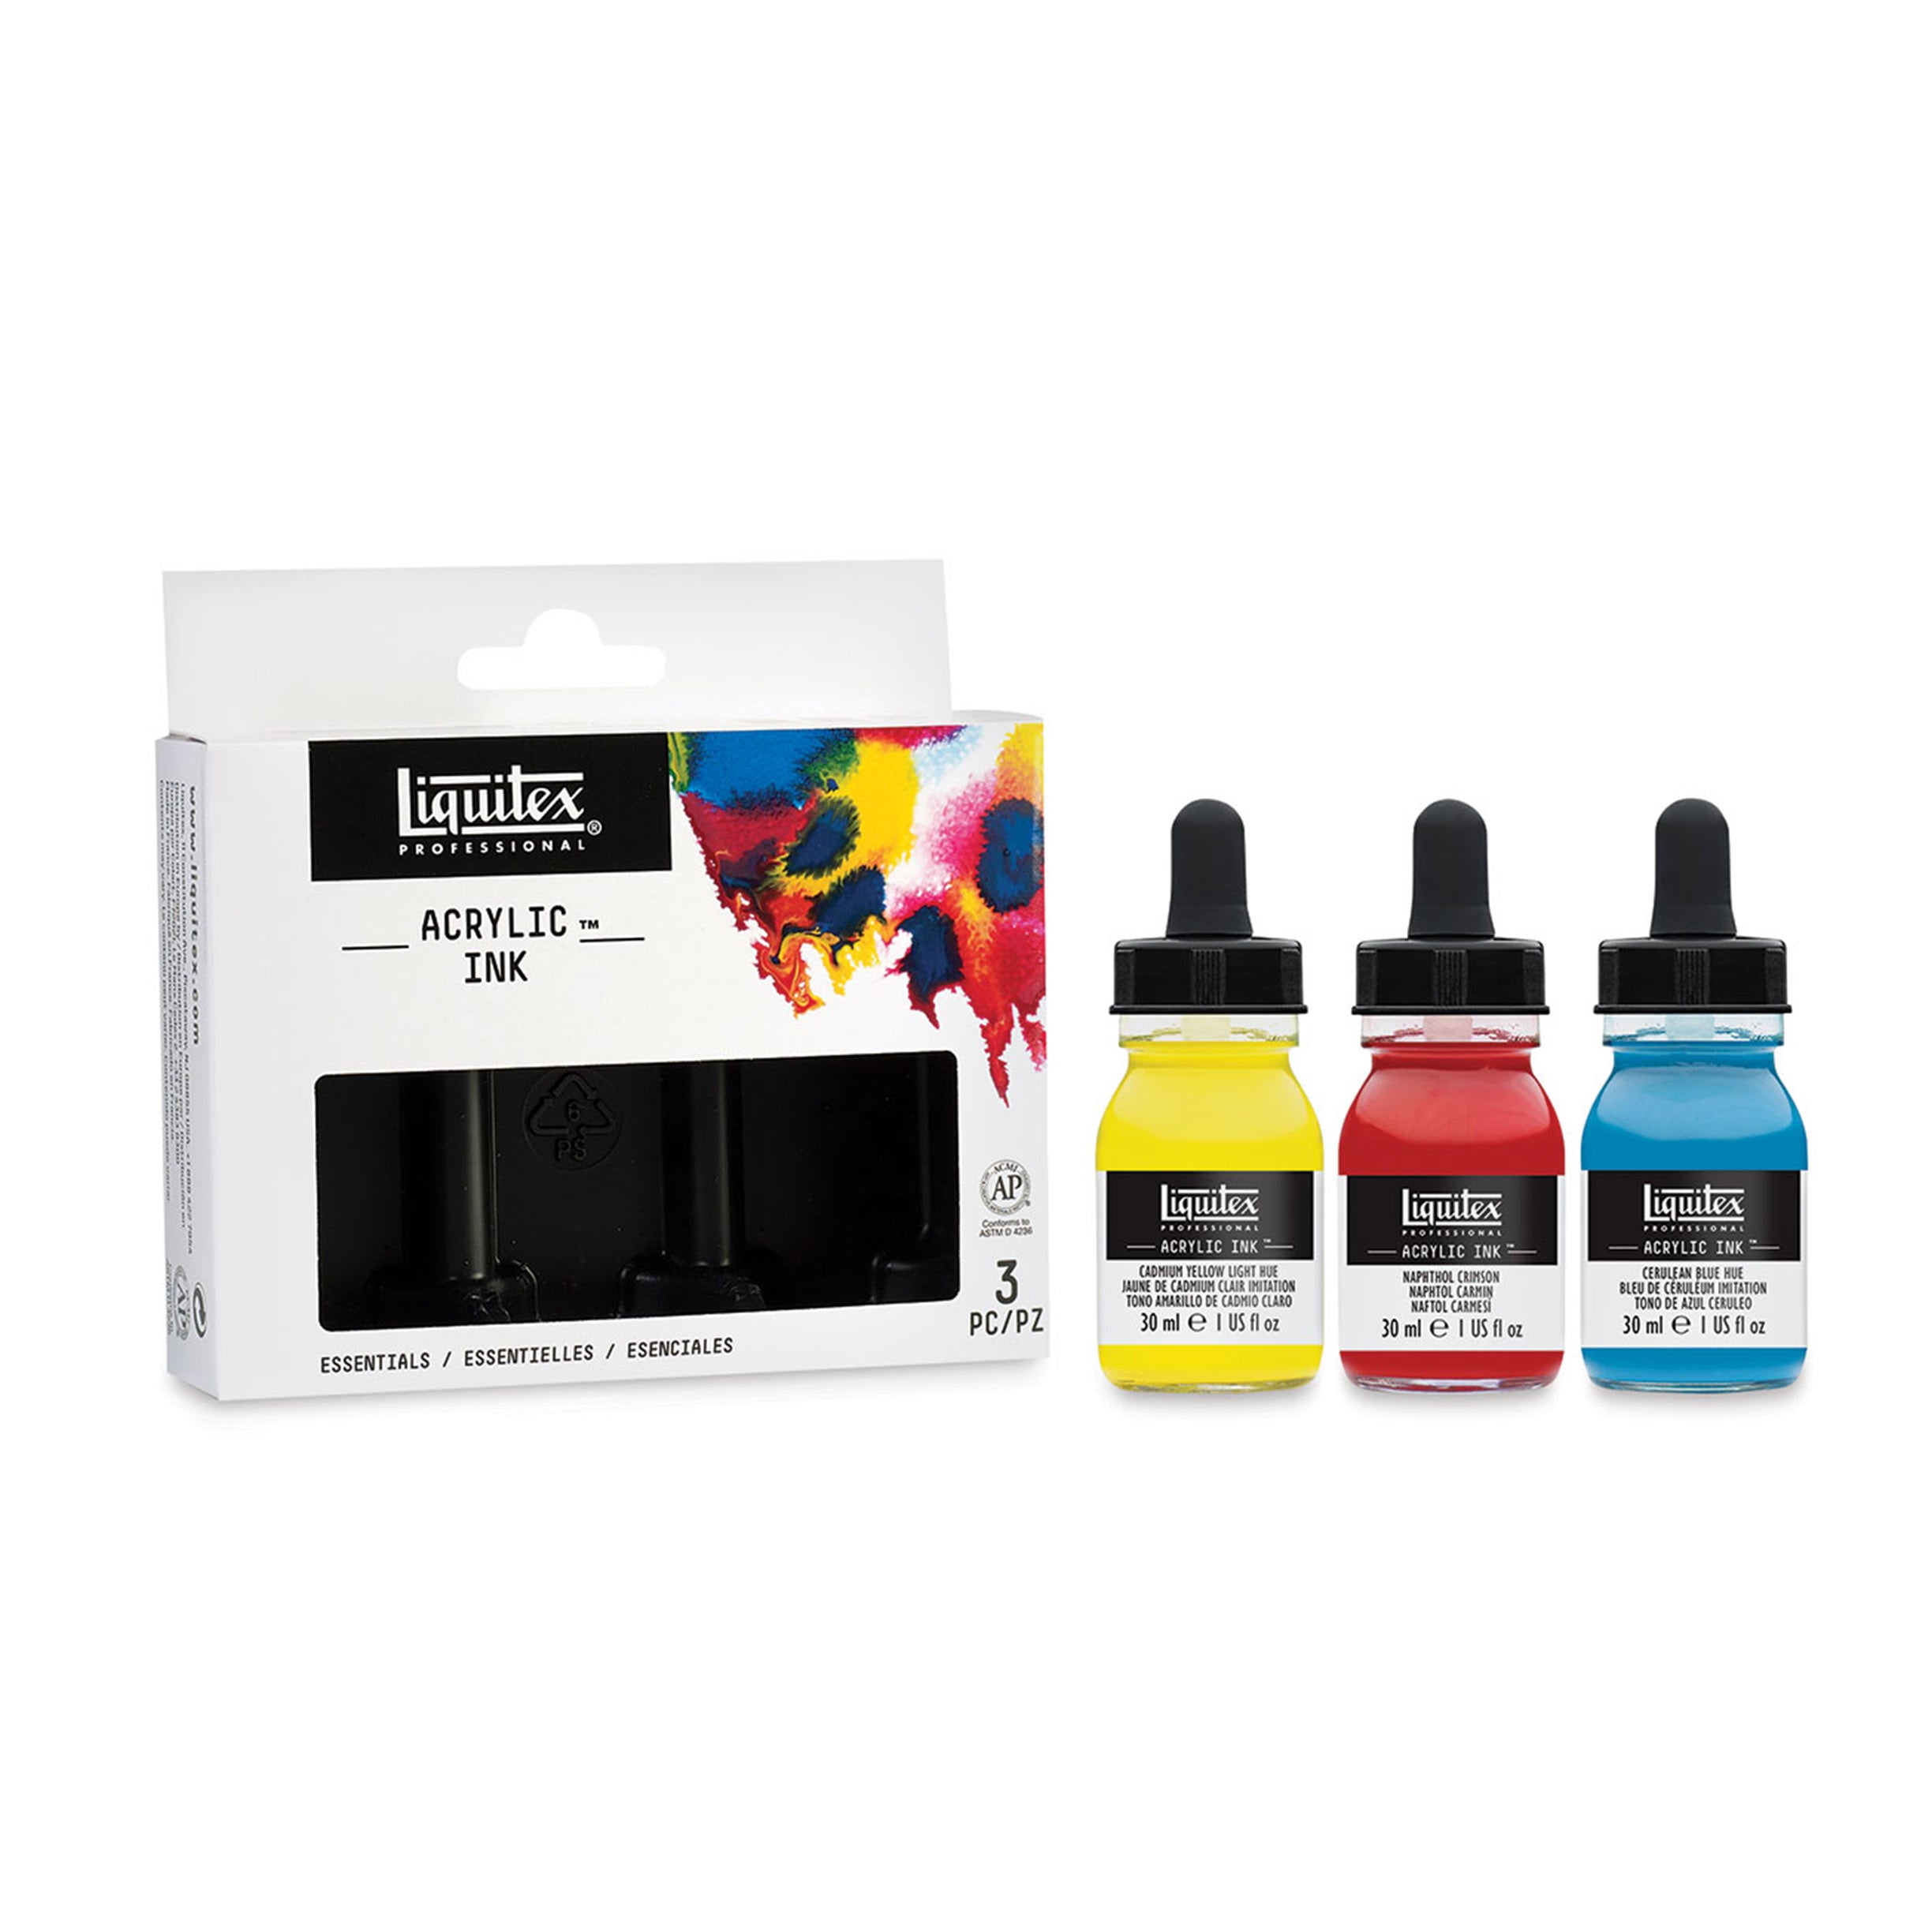 Liquitex Professional Acrylic Ink, Color Set